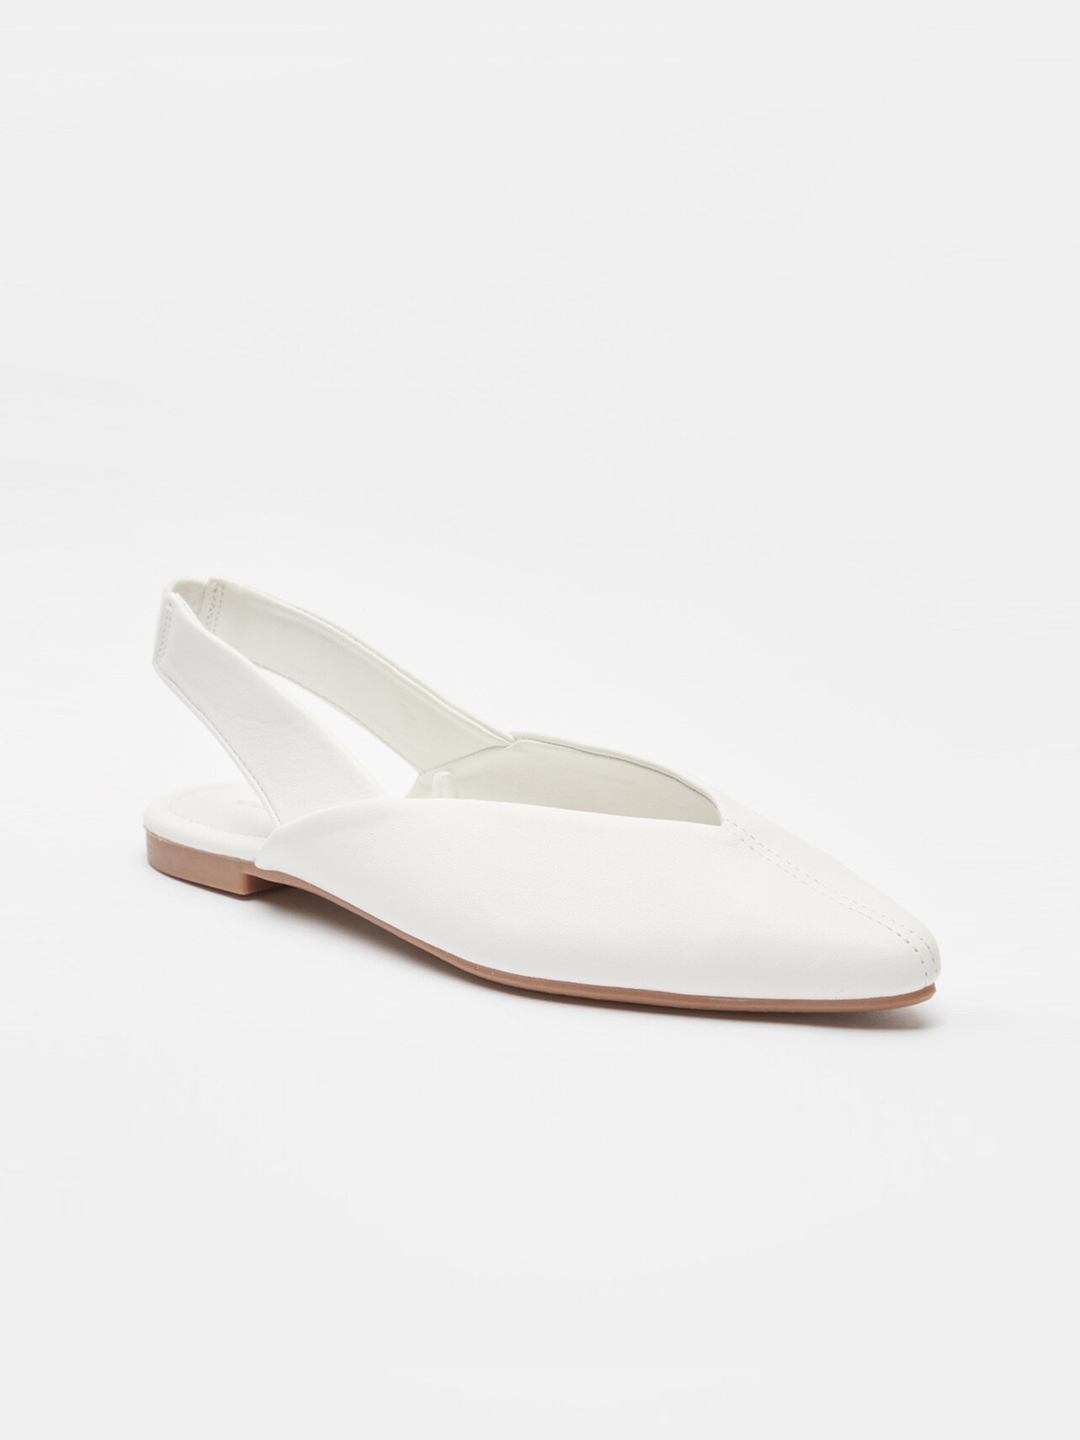 Buy Shoexpress Women White PU Slip On Mules - Casual Shoes for Women ...